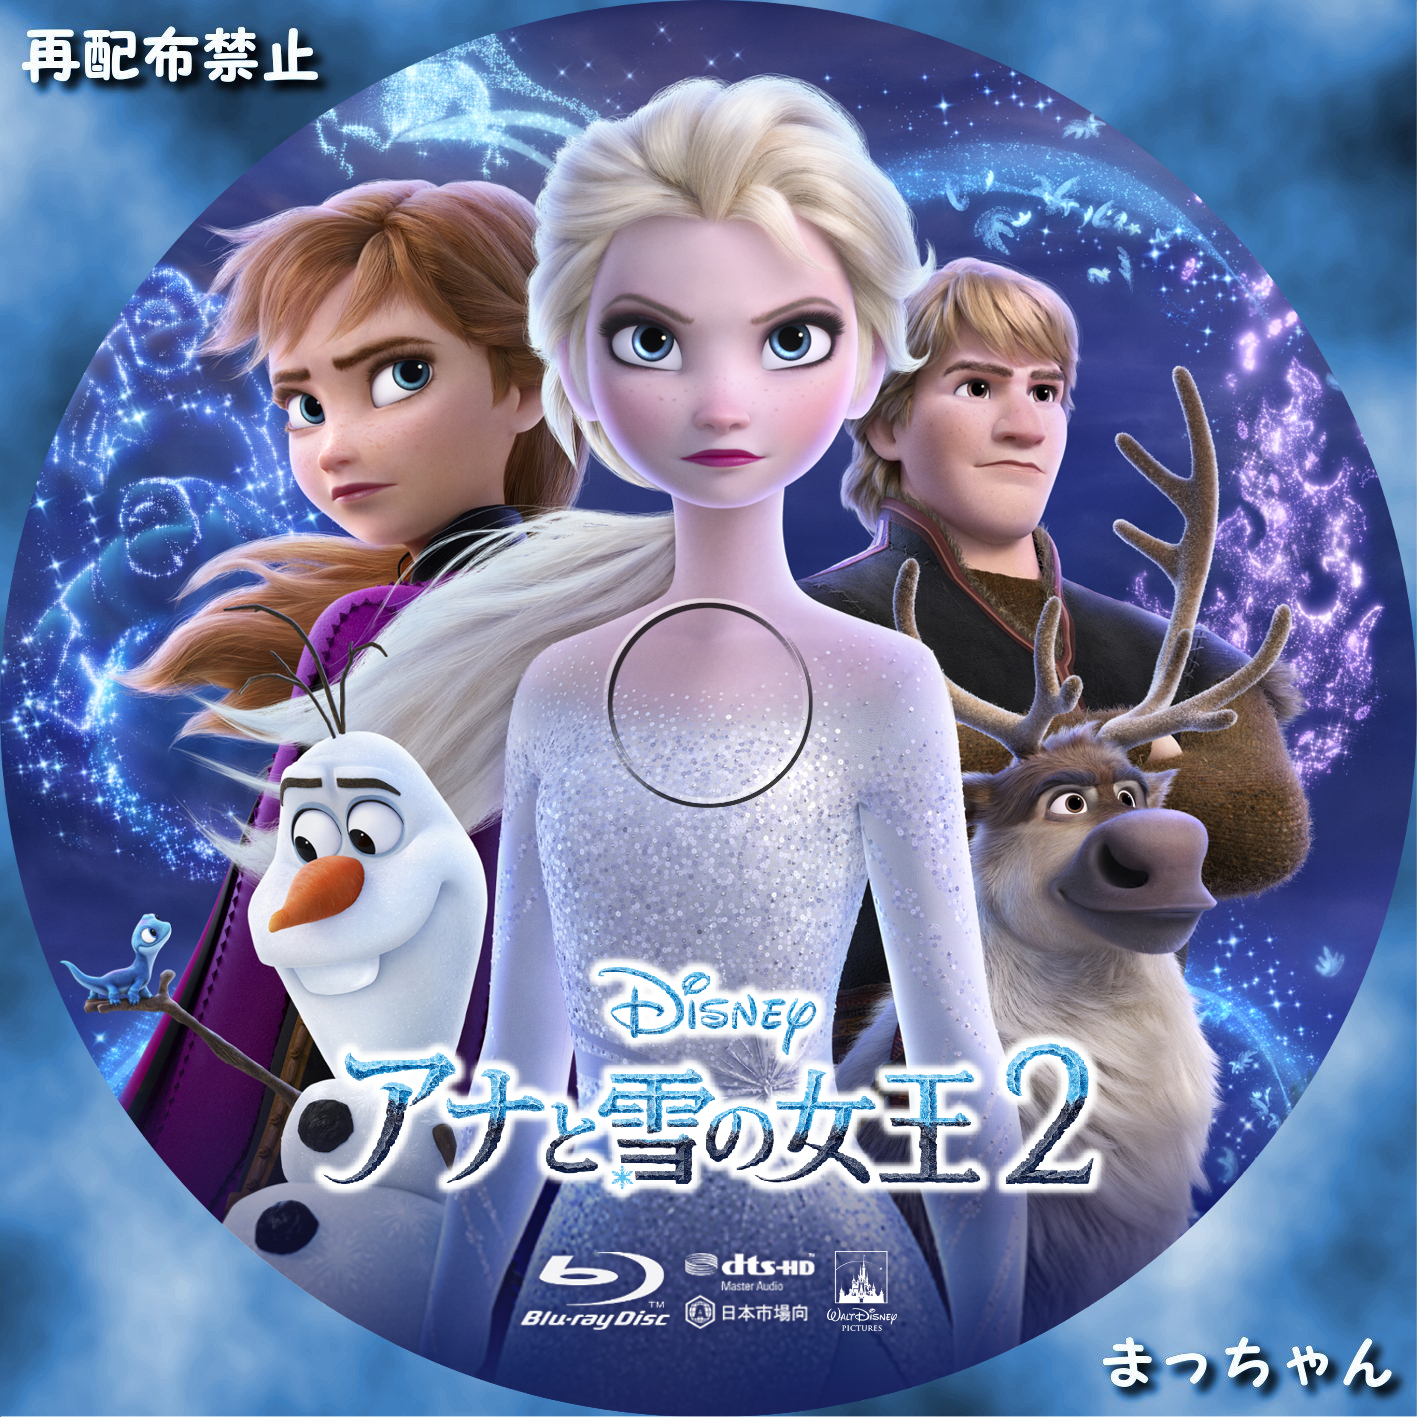 103.アナと雪の女王 Blu-ray 2作品セット アナと雪の女王2-